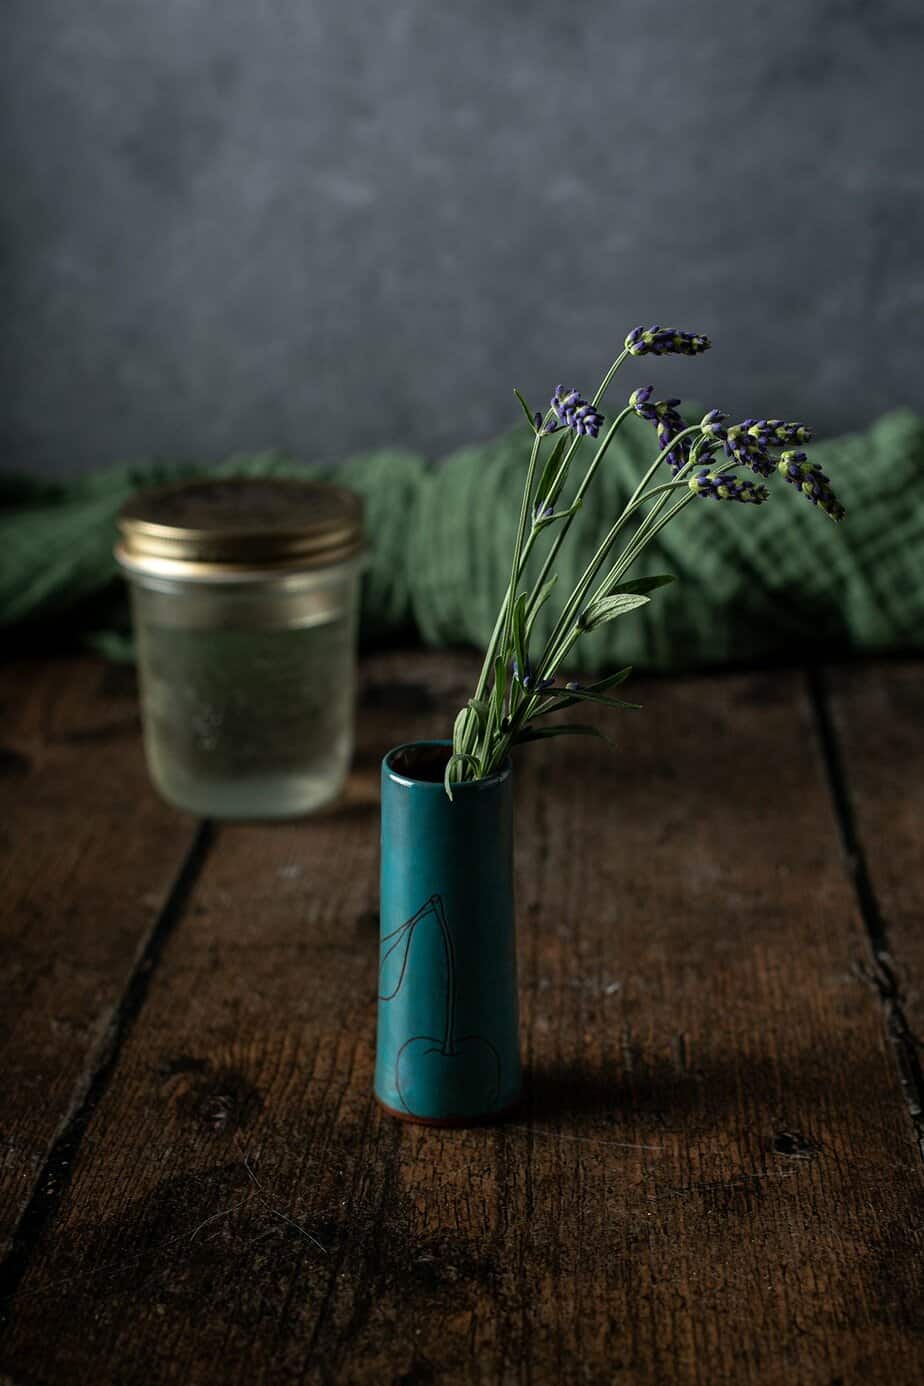 bud vase full of lavender